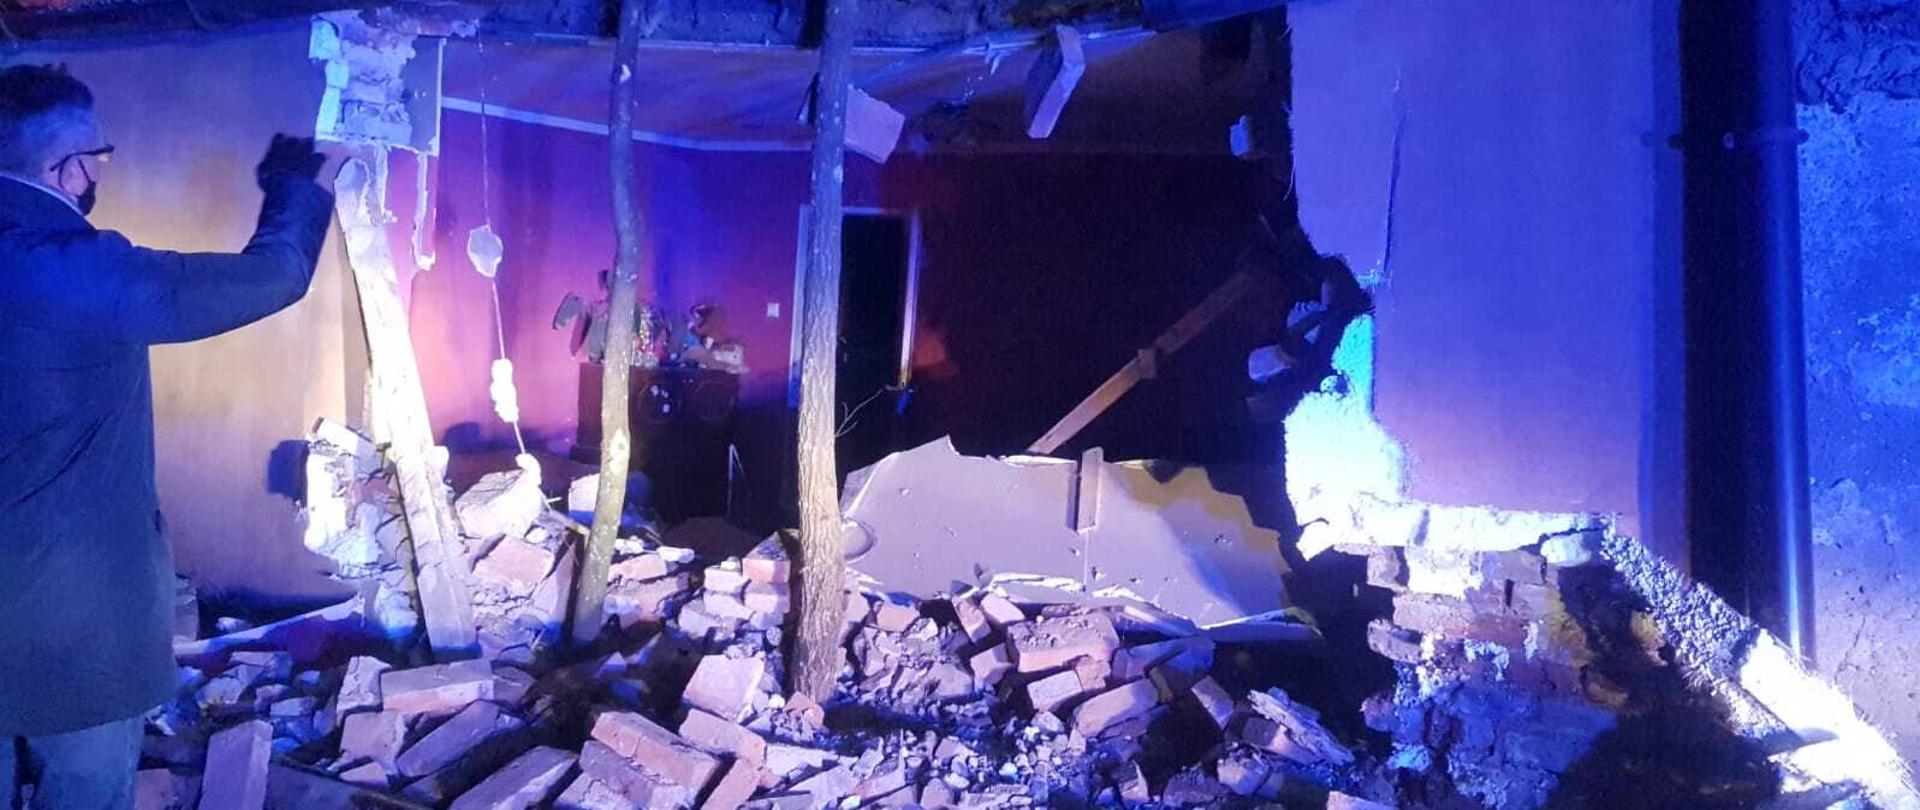 Na zdjęciu widać uszkodzony przez pojazd budynek mieszkalny.